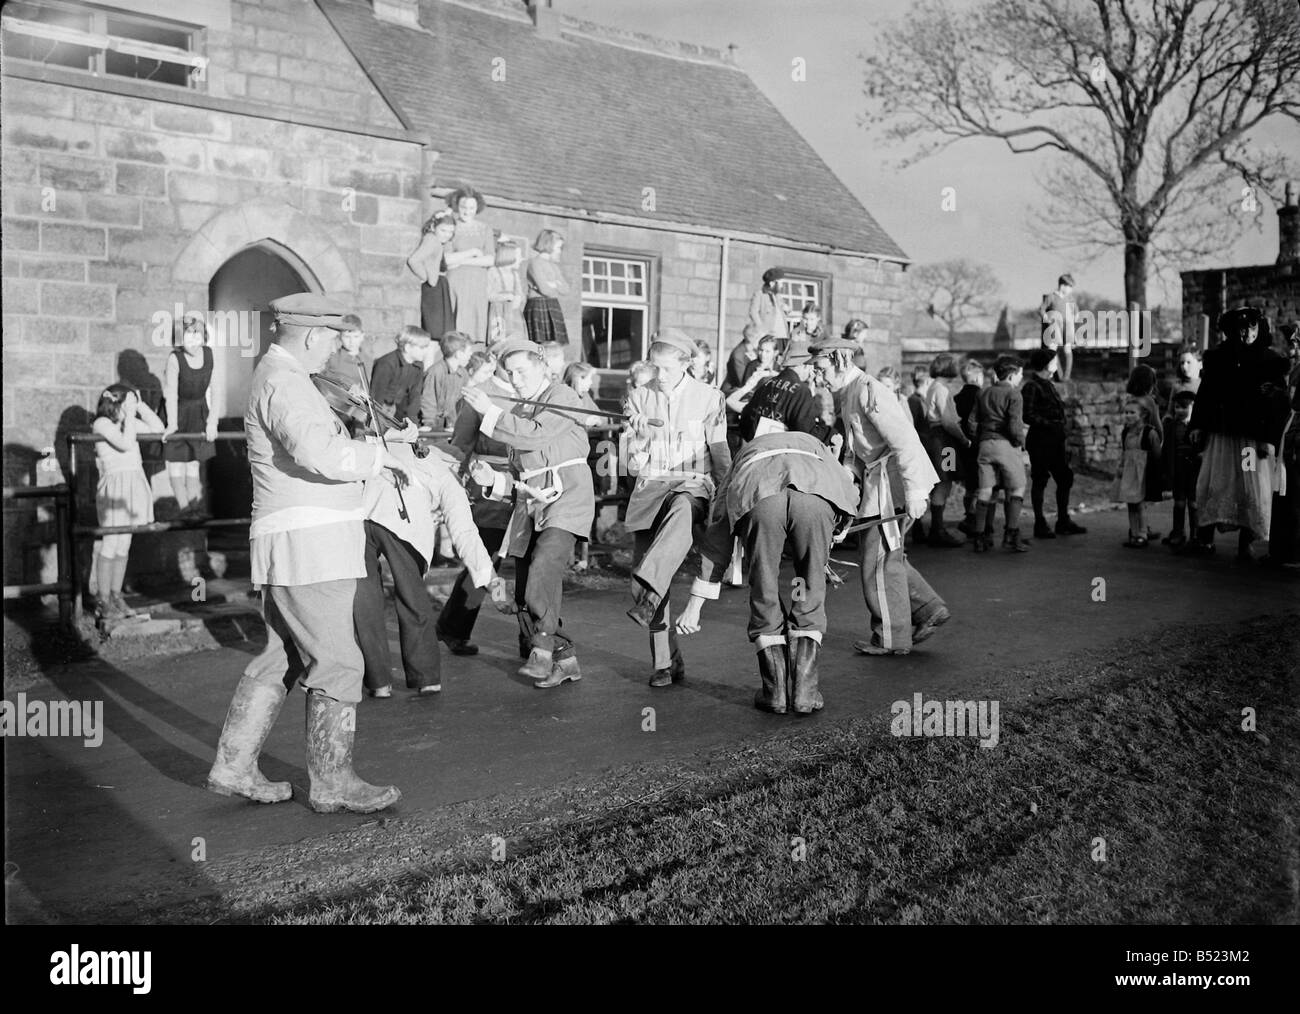 Goathland Plough Stots Yorkshire County dance team performing ancienne cérémonie de danser devant chaque maison dans village de Goatland, Yorks. La Charrue Goathland Stots sont un rare exemple d'une tradition rurale autrefois répandue qui a reconnu l'importance de la charrue et célébré avec sword danse, musique et théâtre folkloriques. Traditions similaires ont déjà existé dans d'autres parties de Yorkshire, Lincolnshire, Derbyshire et Northumberland, où ils étaient connus sous le nom de "garçons de charrue', 'Taureau Lads', 'Ploo avocats adjoints' Jacks (charrue) et le 'fond' de charrue ou fou. Janvier 1950 022214/1 Banque D'Images